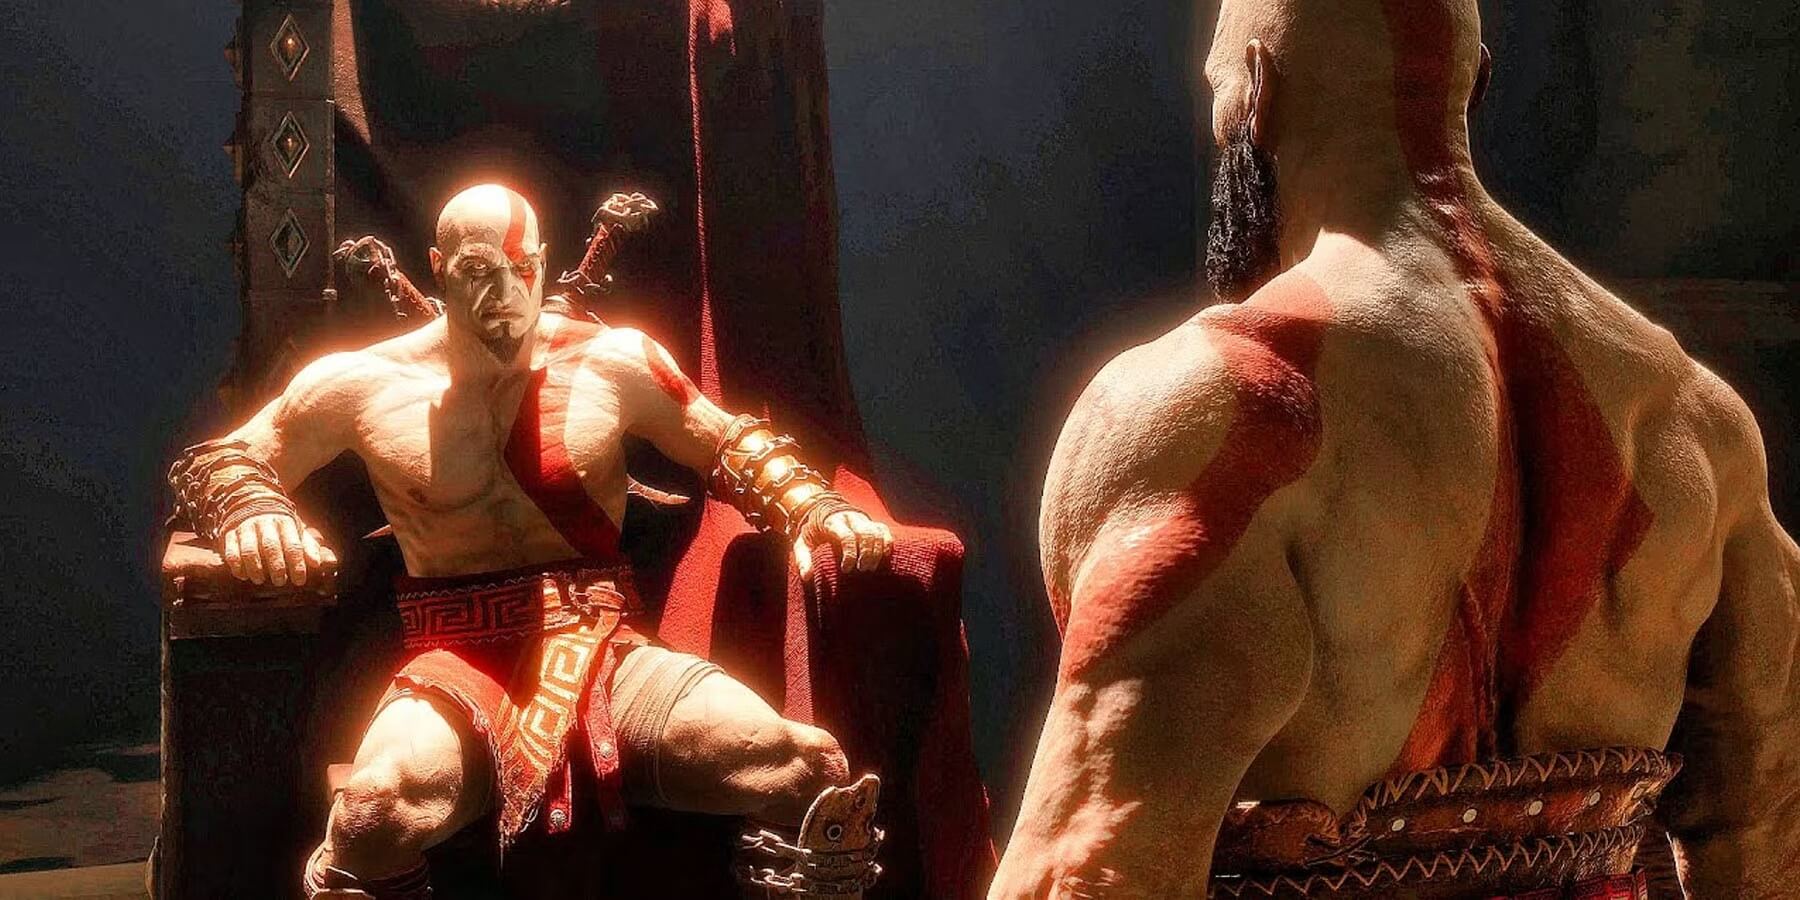 Kratos thay đổi diện mạo: Tương lai của God of War ra sao?